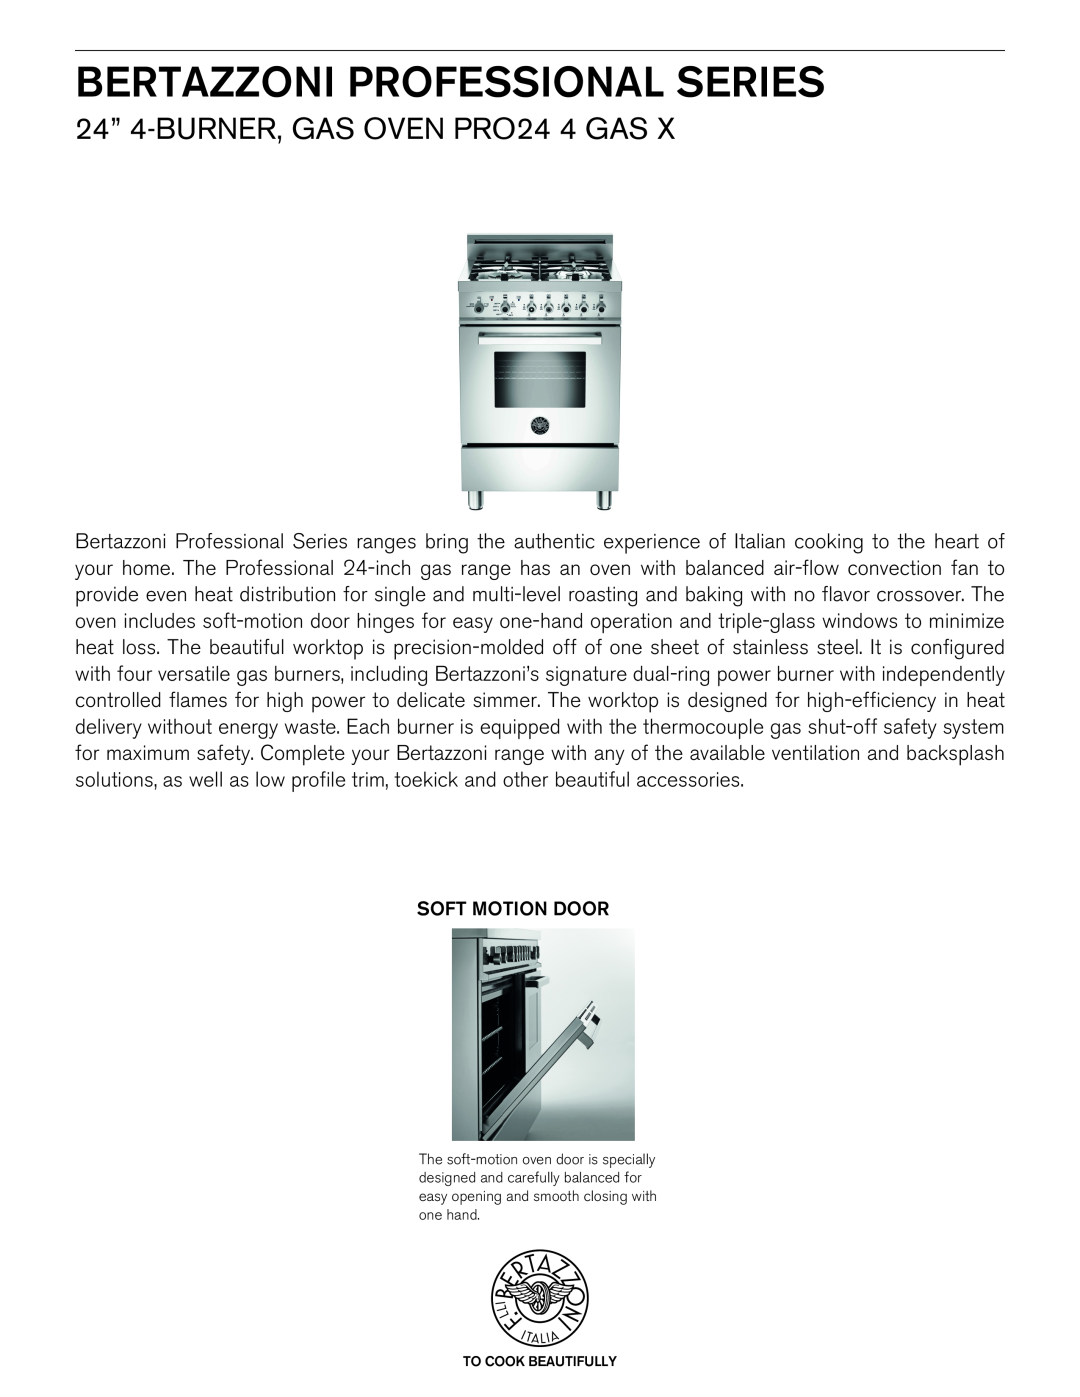 Bertazzoni PRO 24 4 GAS X manual Bertazzoni Professional Series, 24” 4-Burner,Gas Oven PRO24 4 GAS 